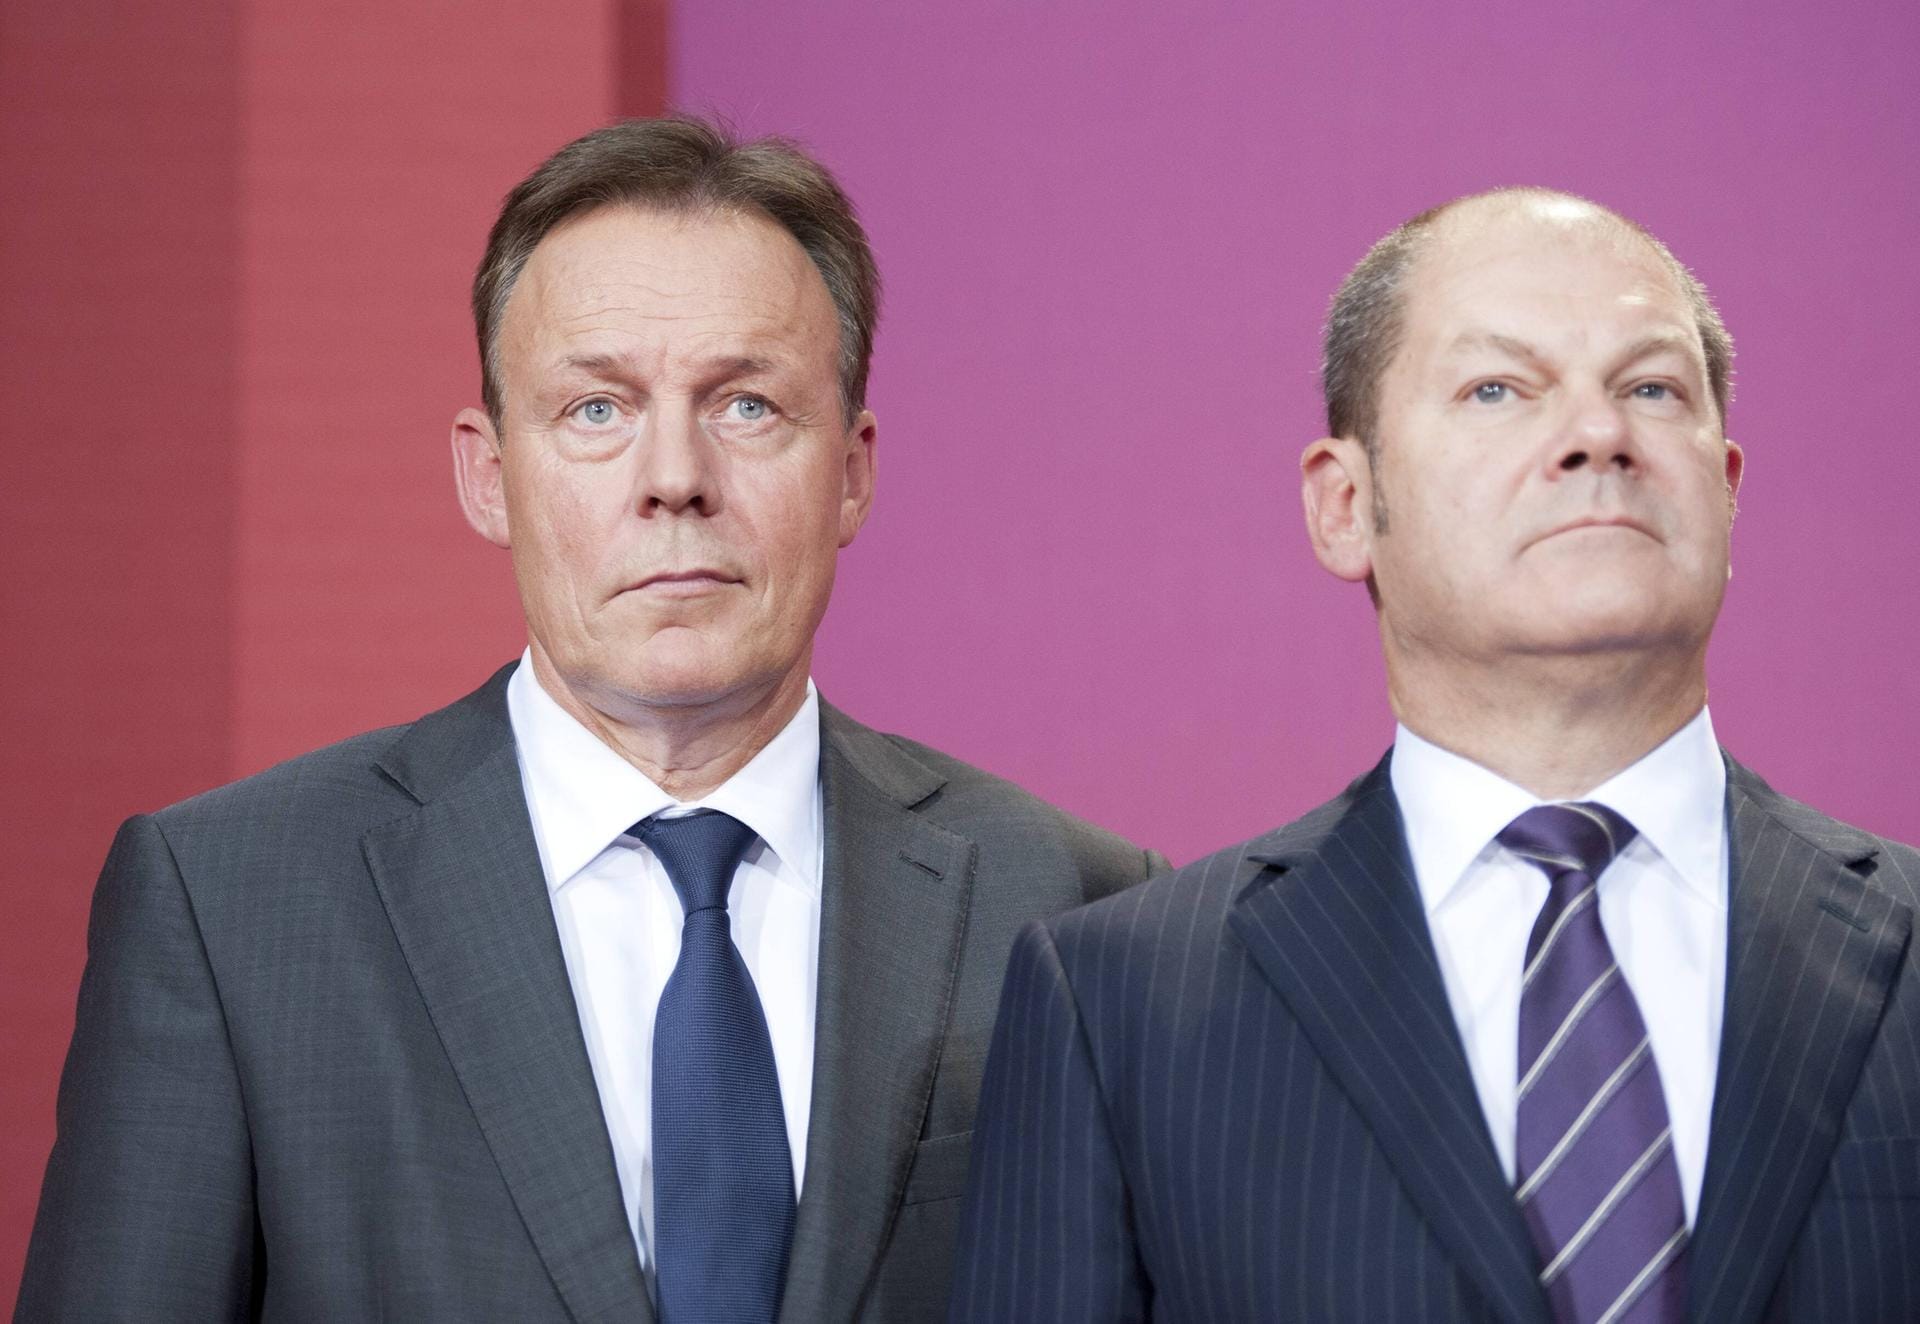 Thomas Oppermann 2013 mit Olaf Scholz in Hamburg: In diesem Jahr wurde Oppermann zum Vorsitzenden der SPD-Bundestagsfraktion gewählt. Eine Aufgabe, um die er sich nach eigenen Angaben nicht gerissen hat. Dennoch blieb er bis 2017 auf diesem Posten.